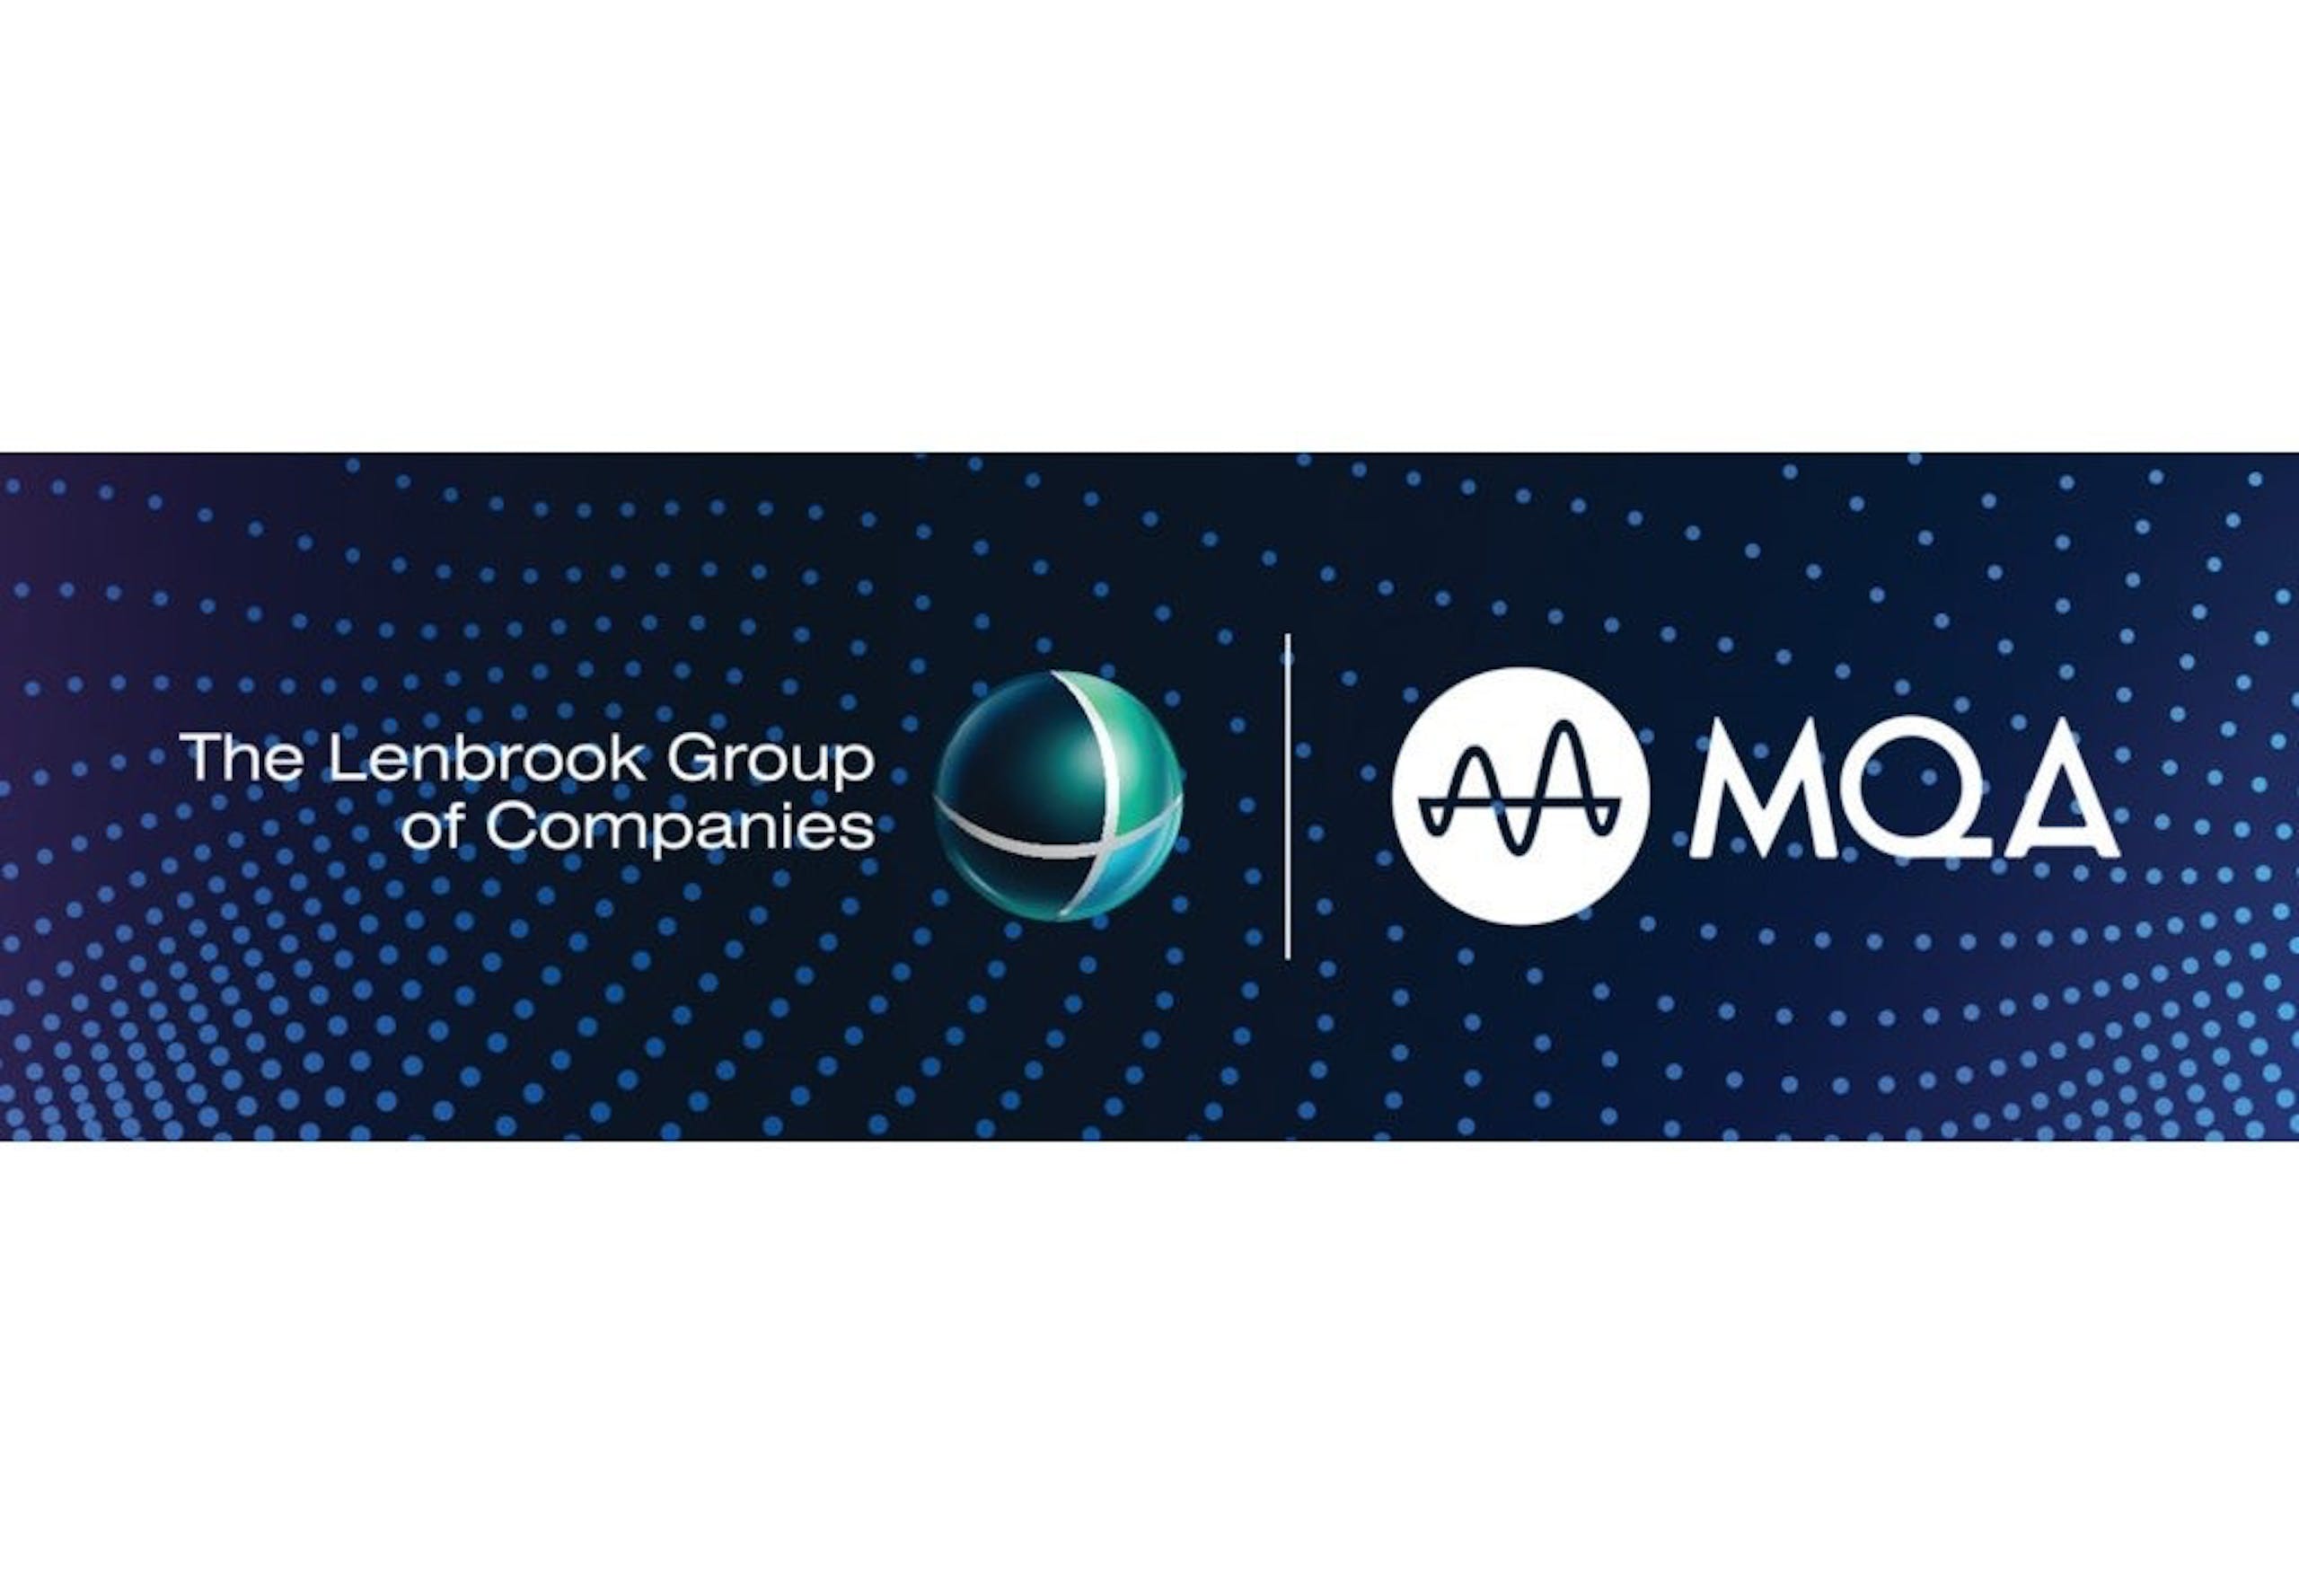 照片中提到了The Lenbrook Group、of Companies、AMA MQA，跟阿布達比伊斯蘭銀行有關，包含了圖形、蘋果手機、蘋果、蘋果、高保真度